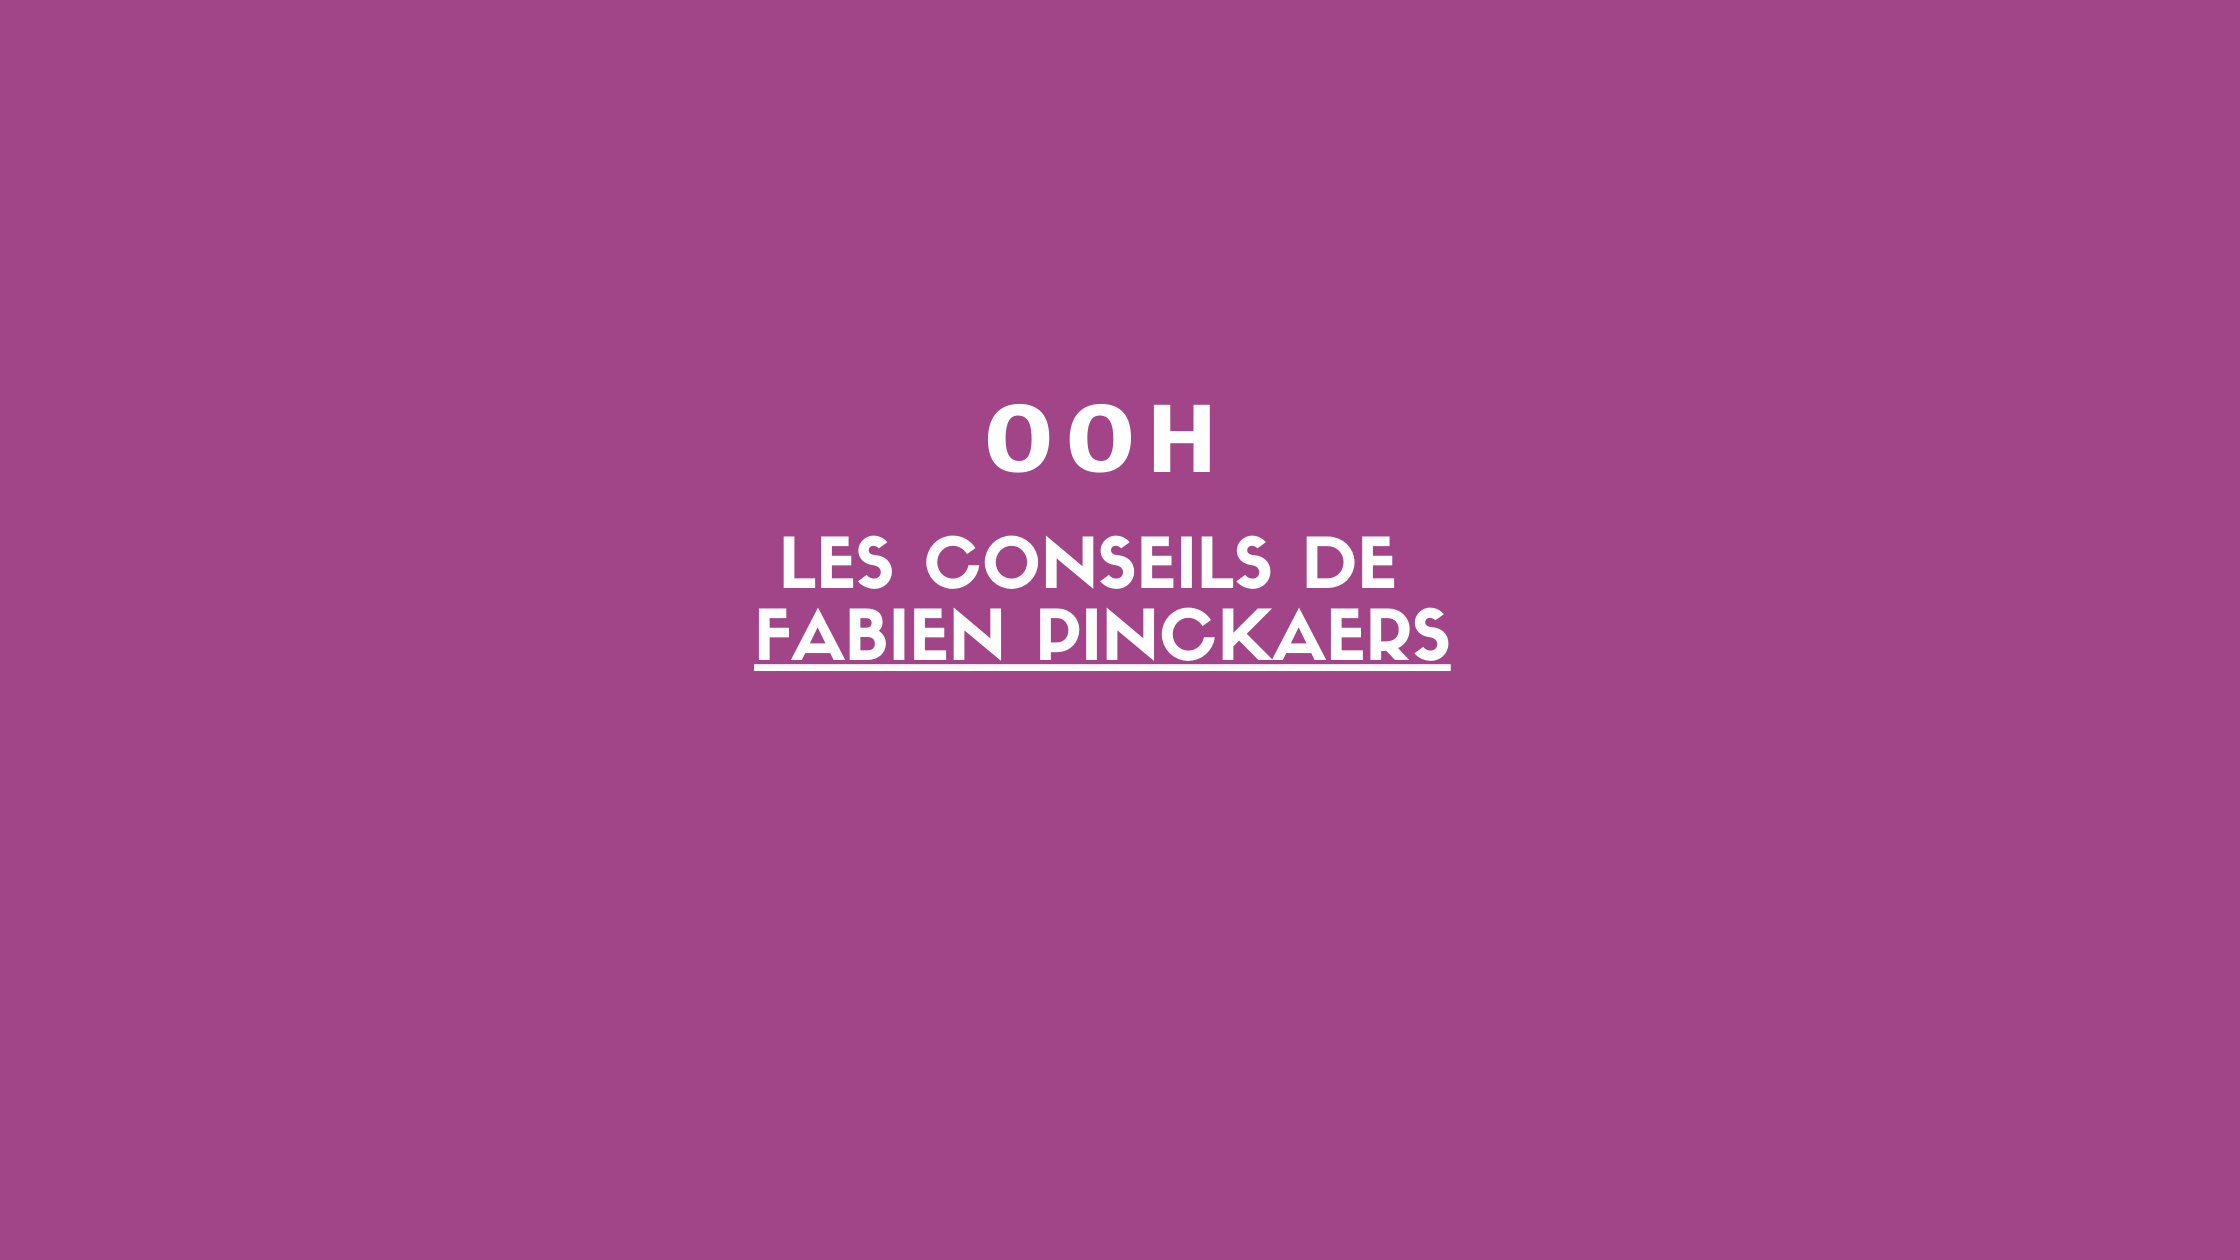 Image article Le succès publicitaire d’Odoo : 3 conseils de Fabien Pinckaers pour l'OOH